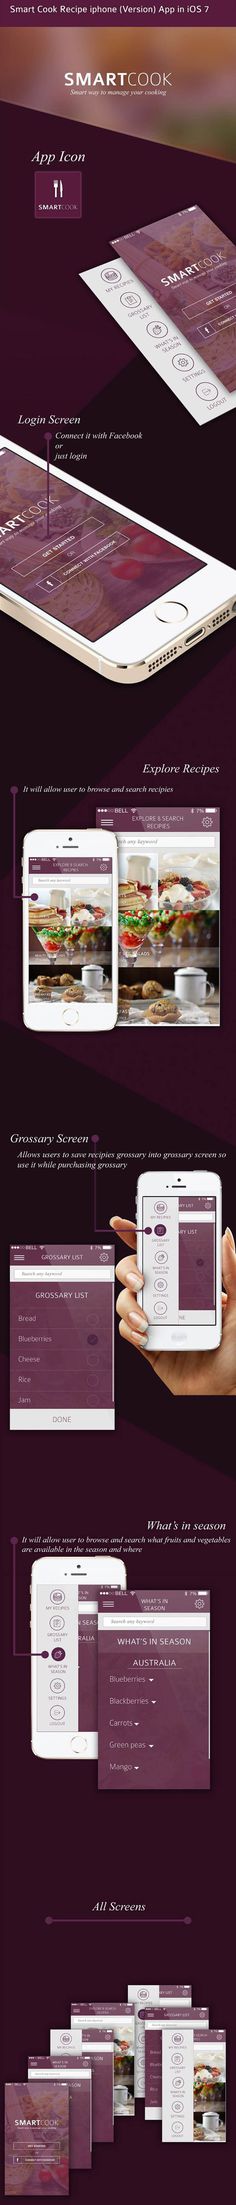 Smart Cook Recipe iphone (Version) App in iOS 7